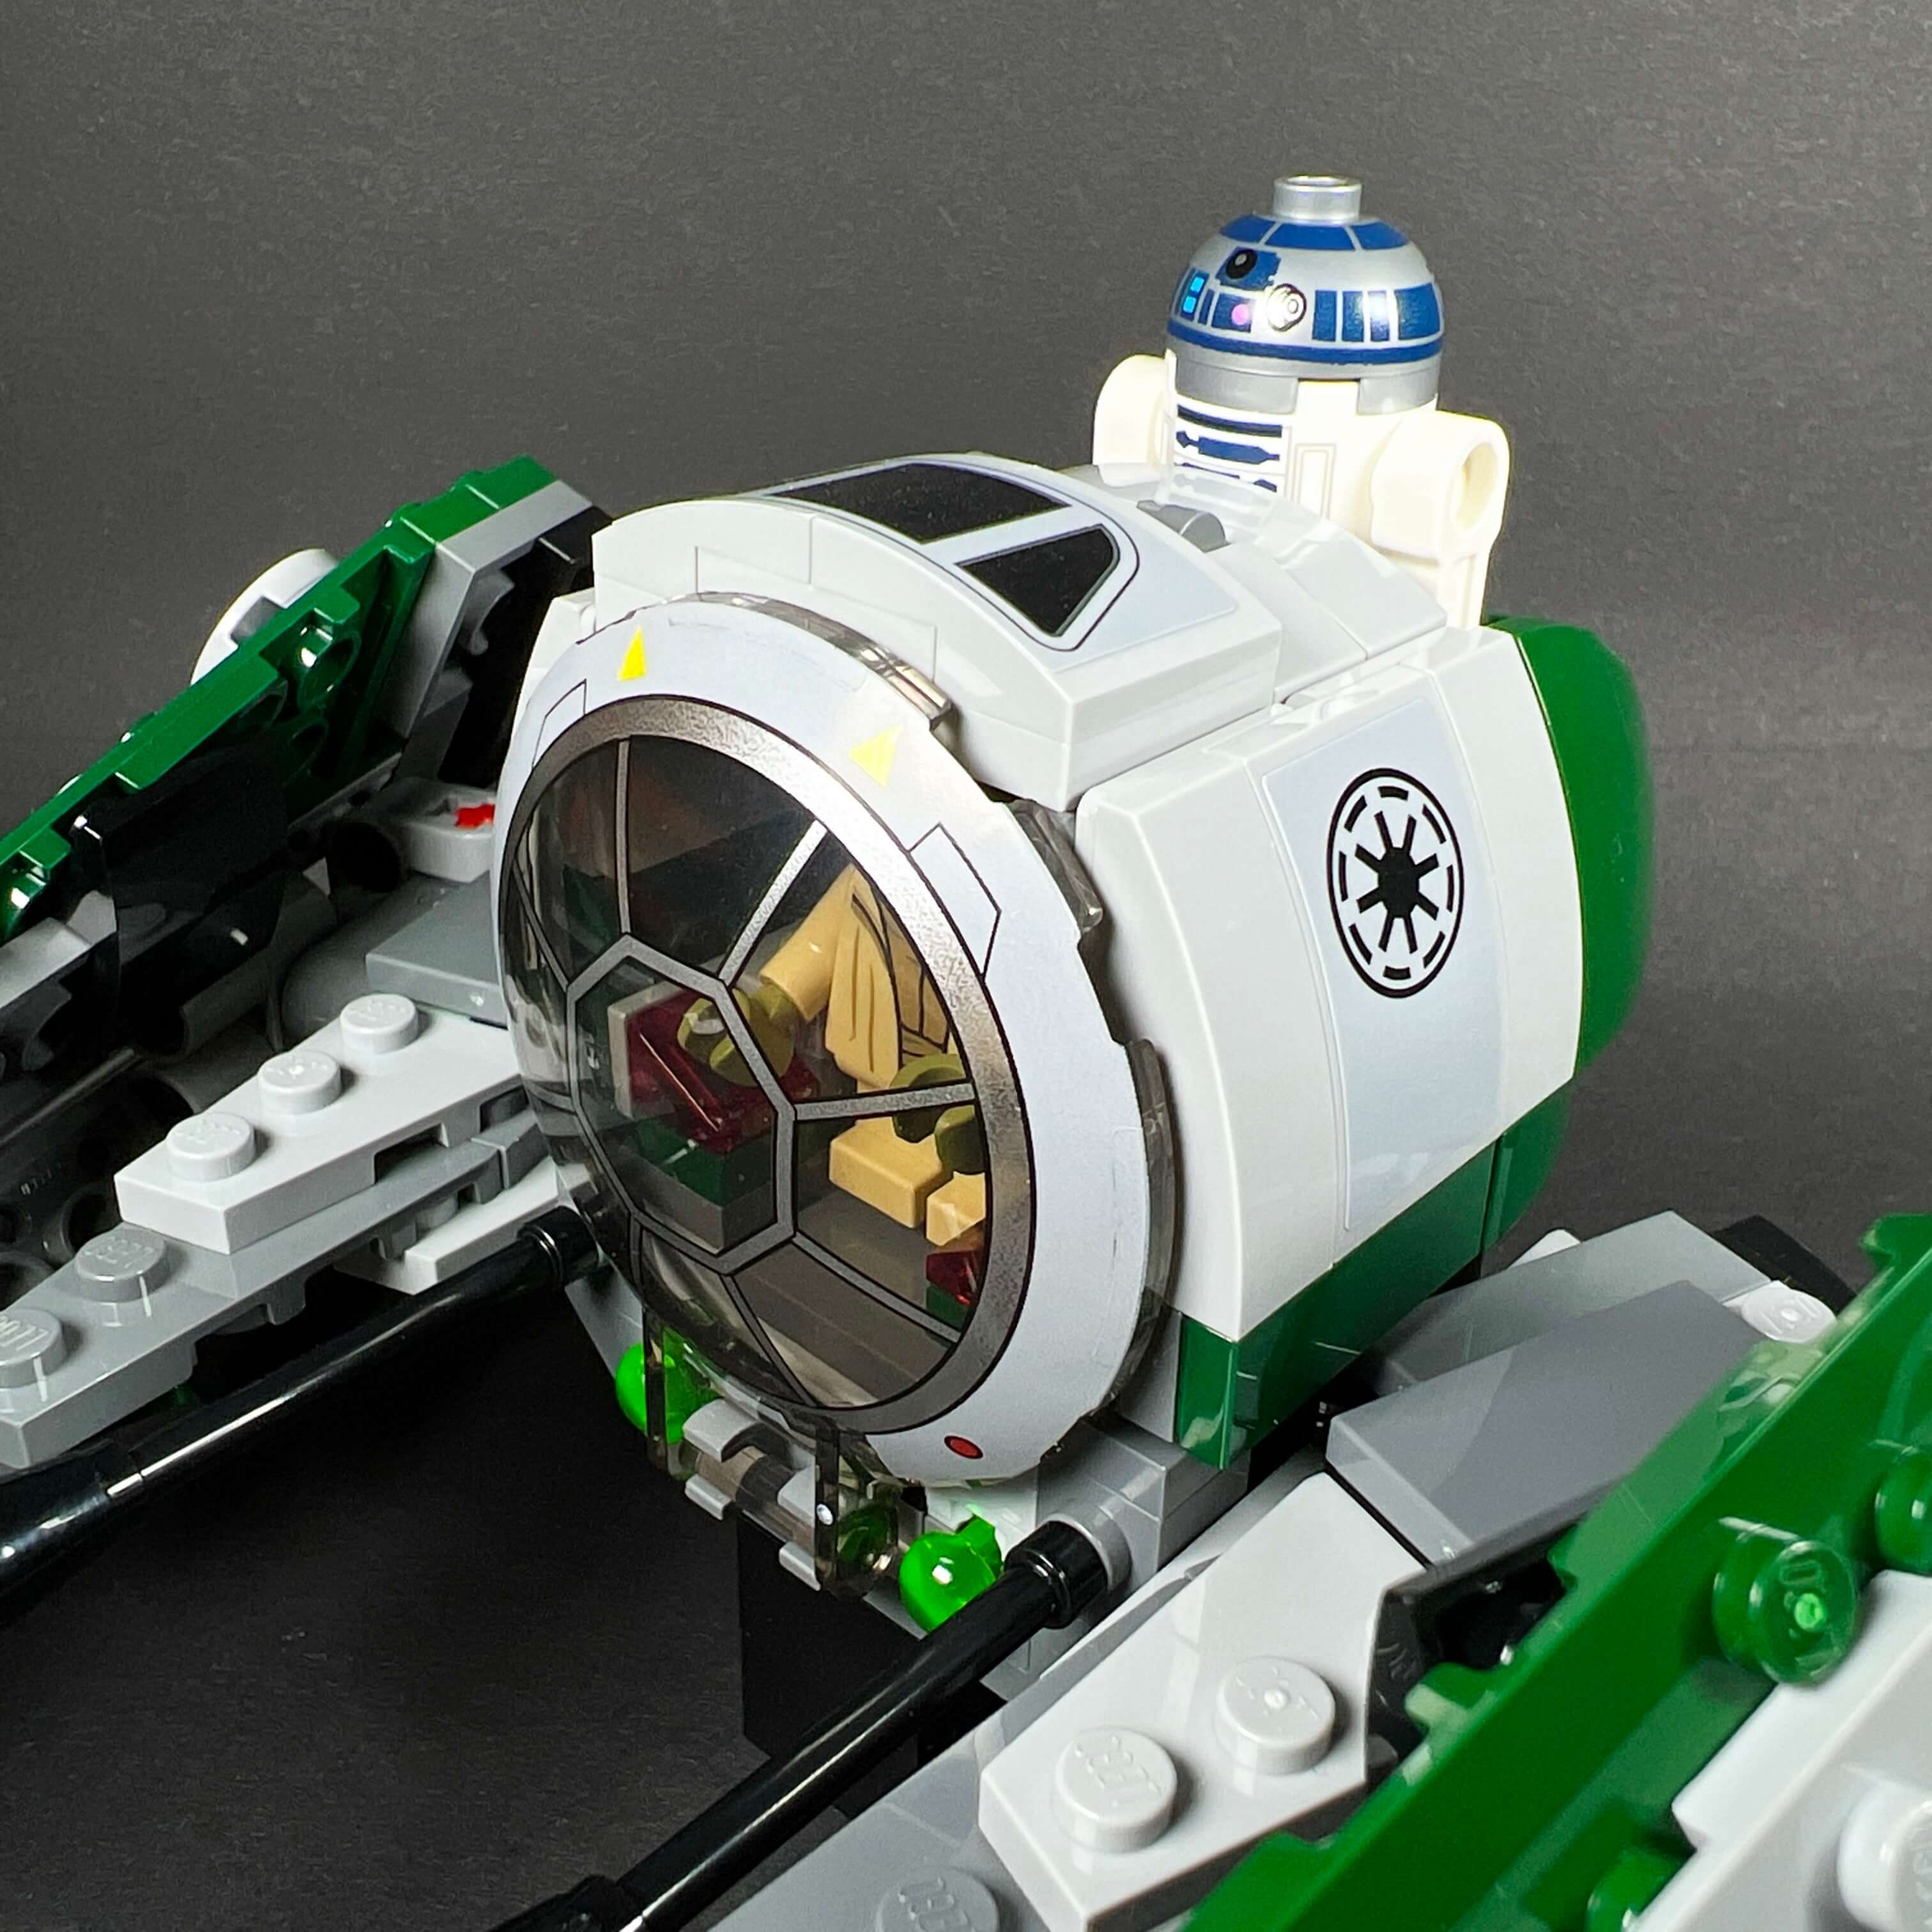 LEGO 75360 Star Wars Le Chasseur Jedi de Yoda, Jouet de Constructio